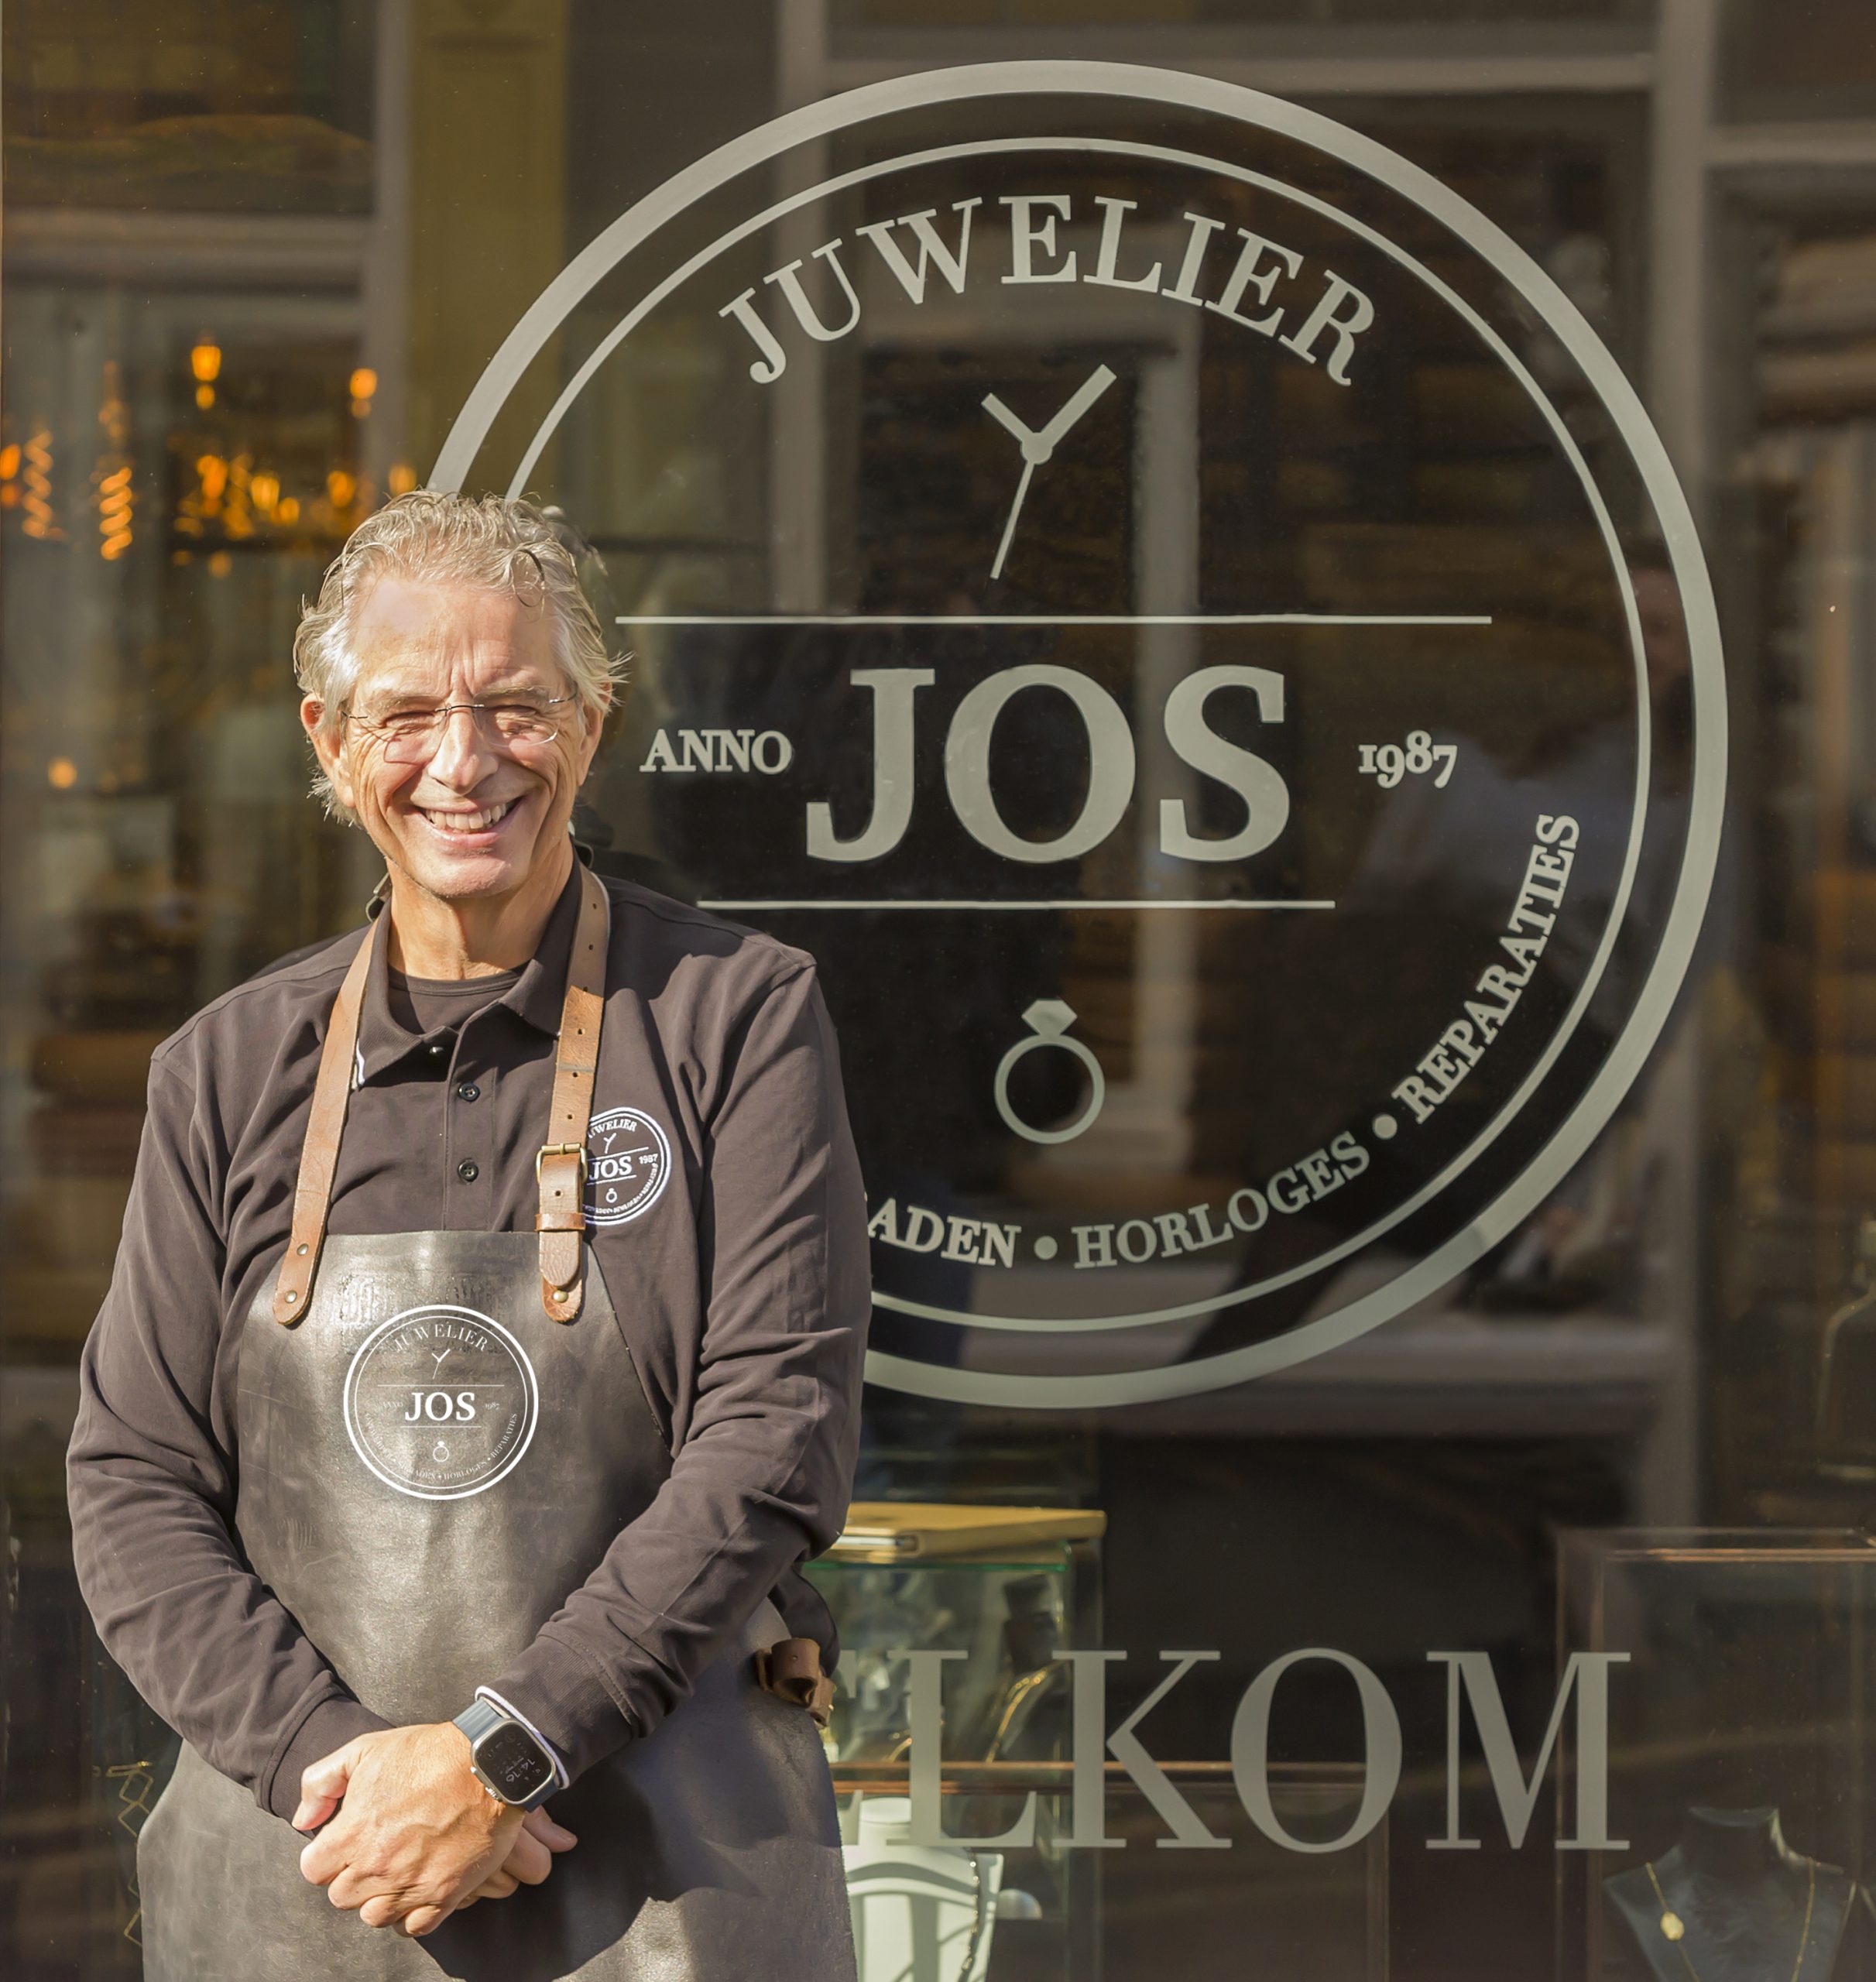 Goudsmid Jos van Beek voor winkel Juwelier Jos met logo op raam.